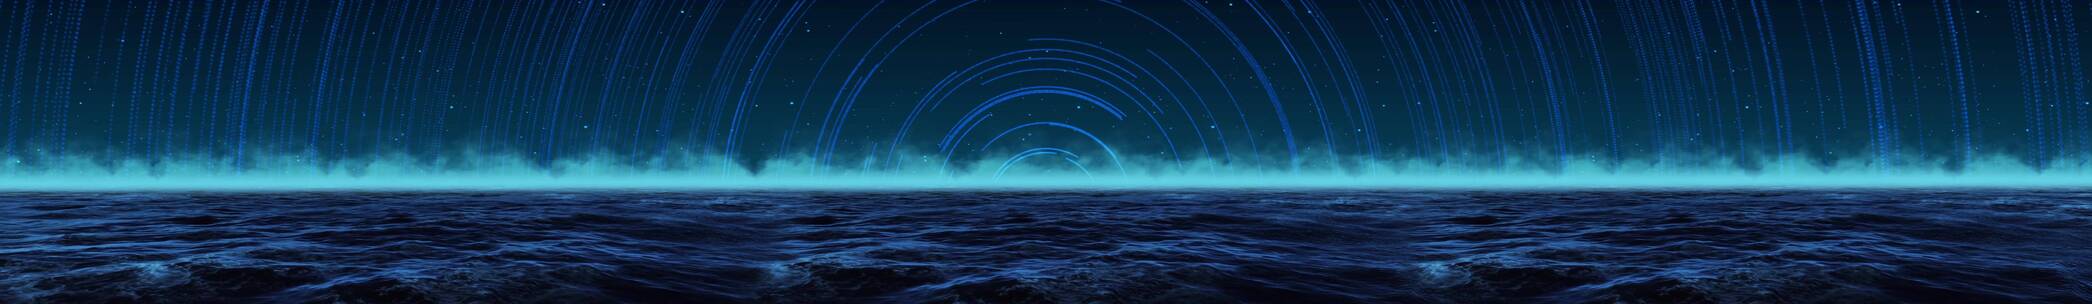 星轨海平面 蓝色海洋 海水